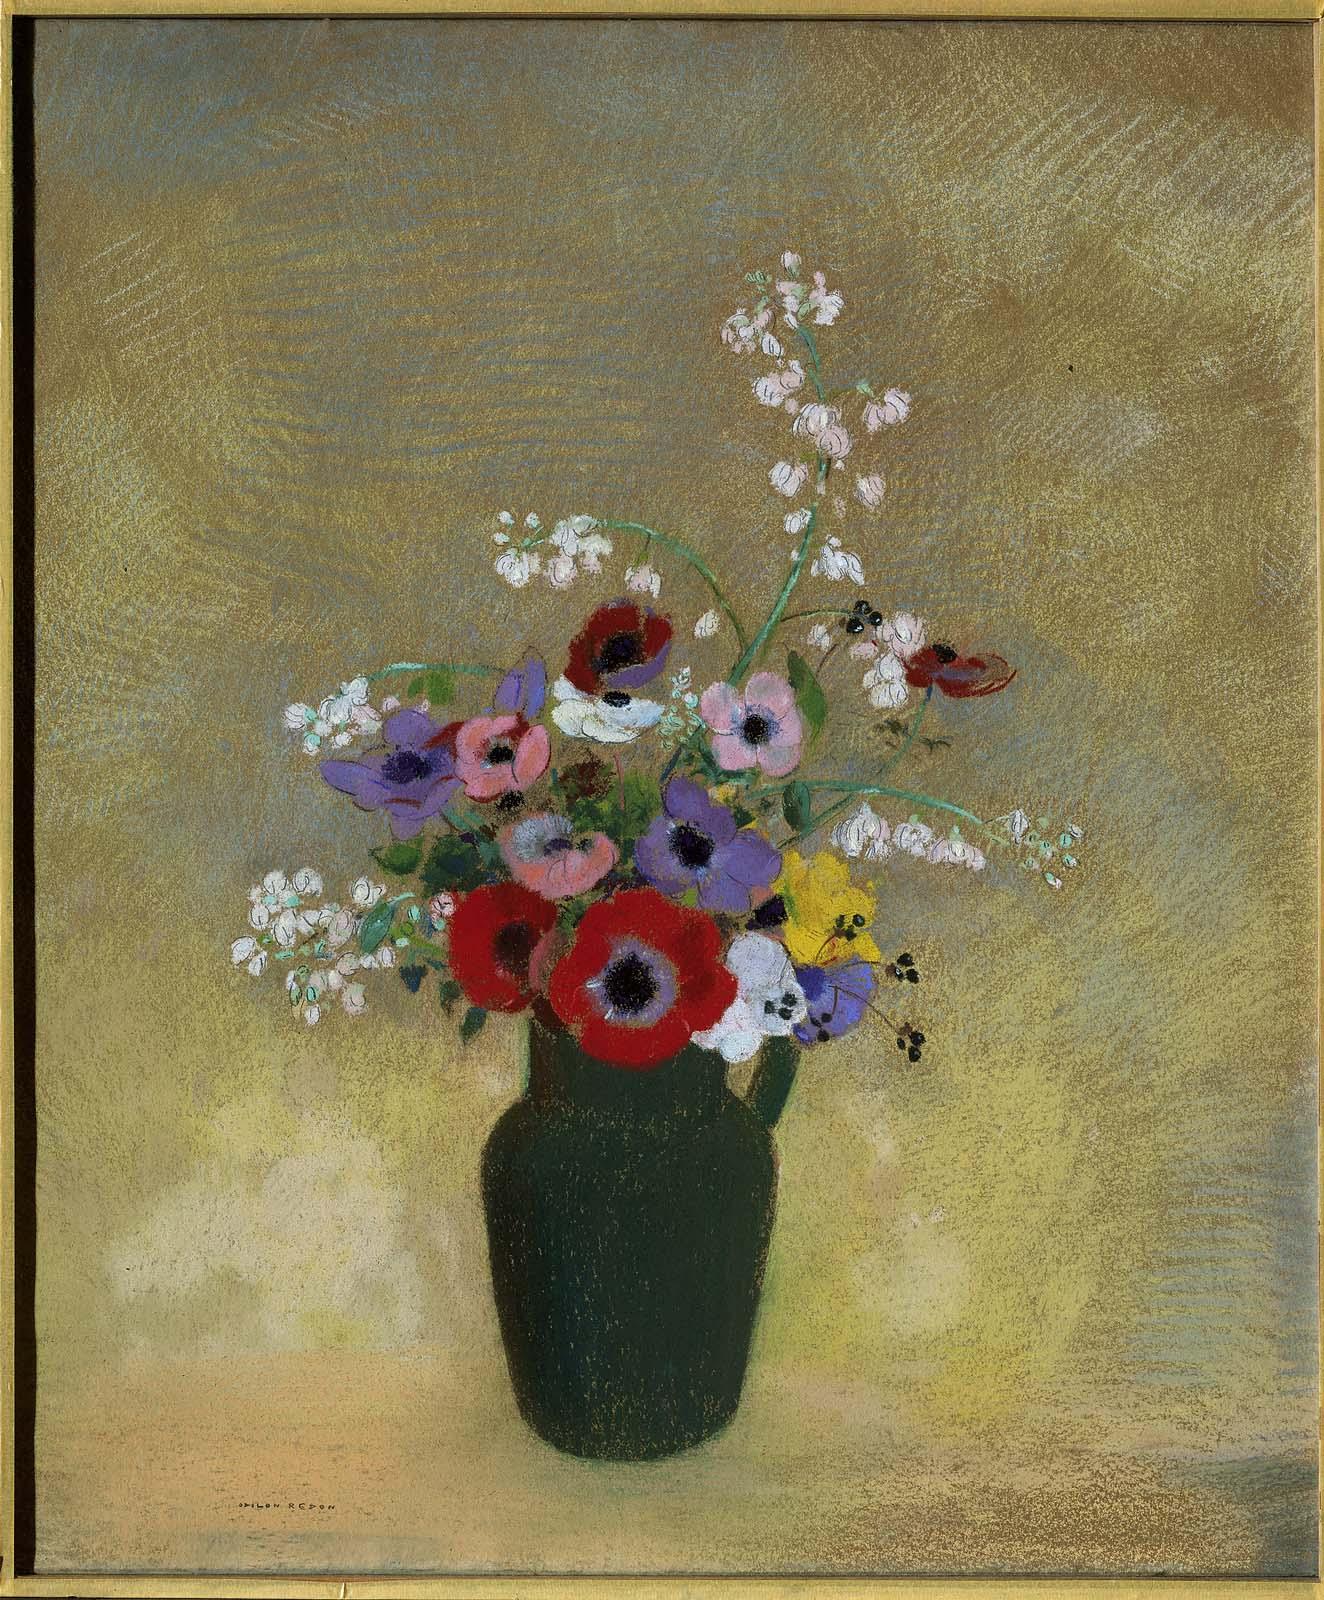 Duża zielona waza z mieszanymi kwiatami by Odilon Redon - 1910-1912 - 74,3 x 62,2 cm 